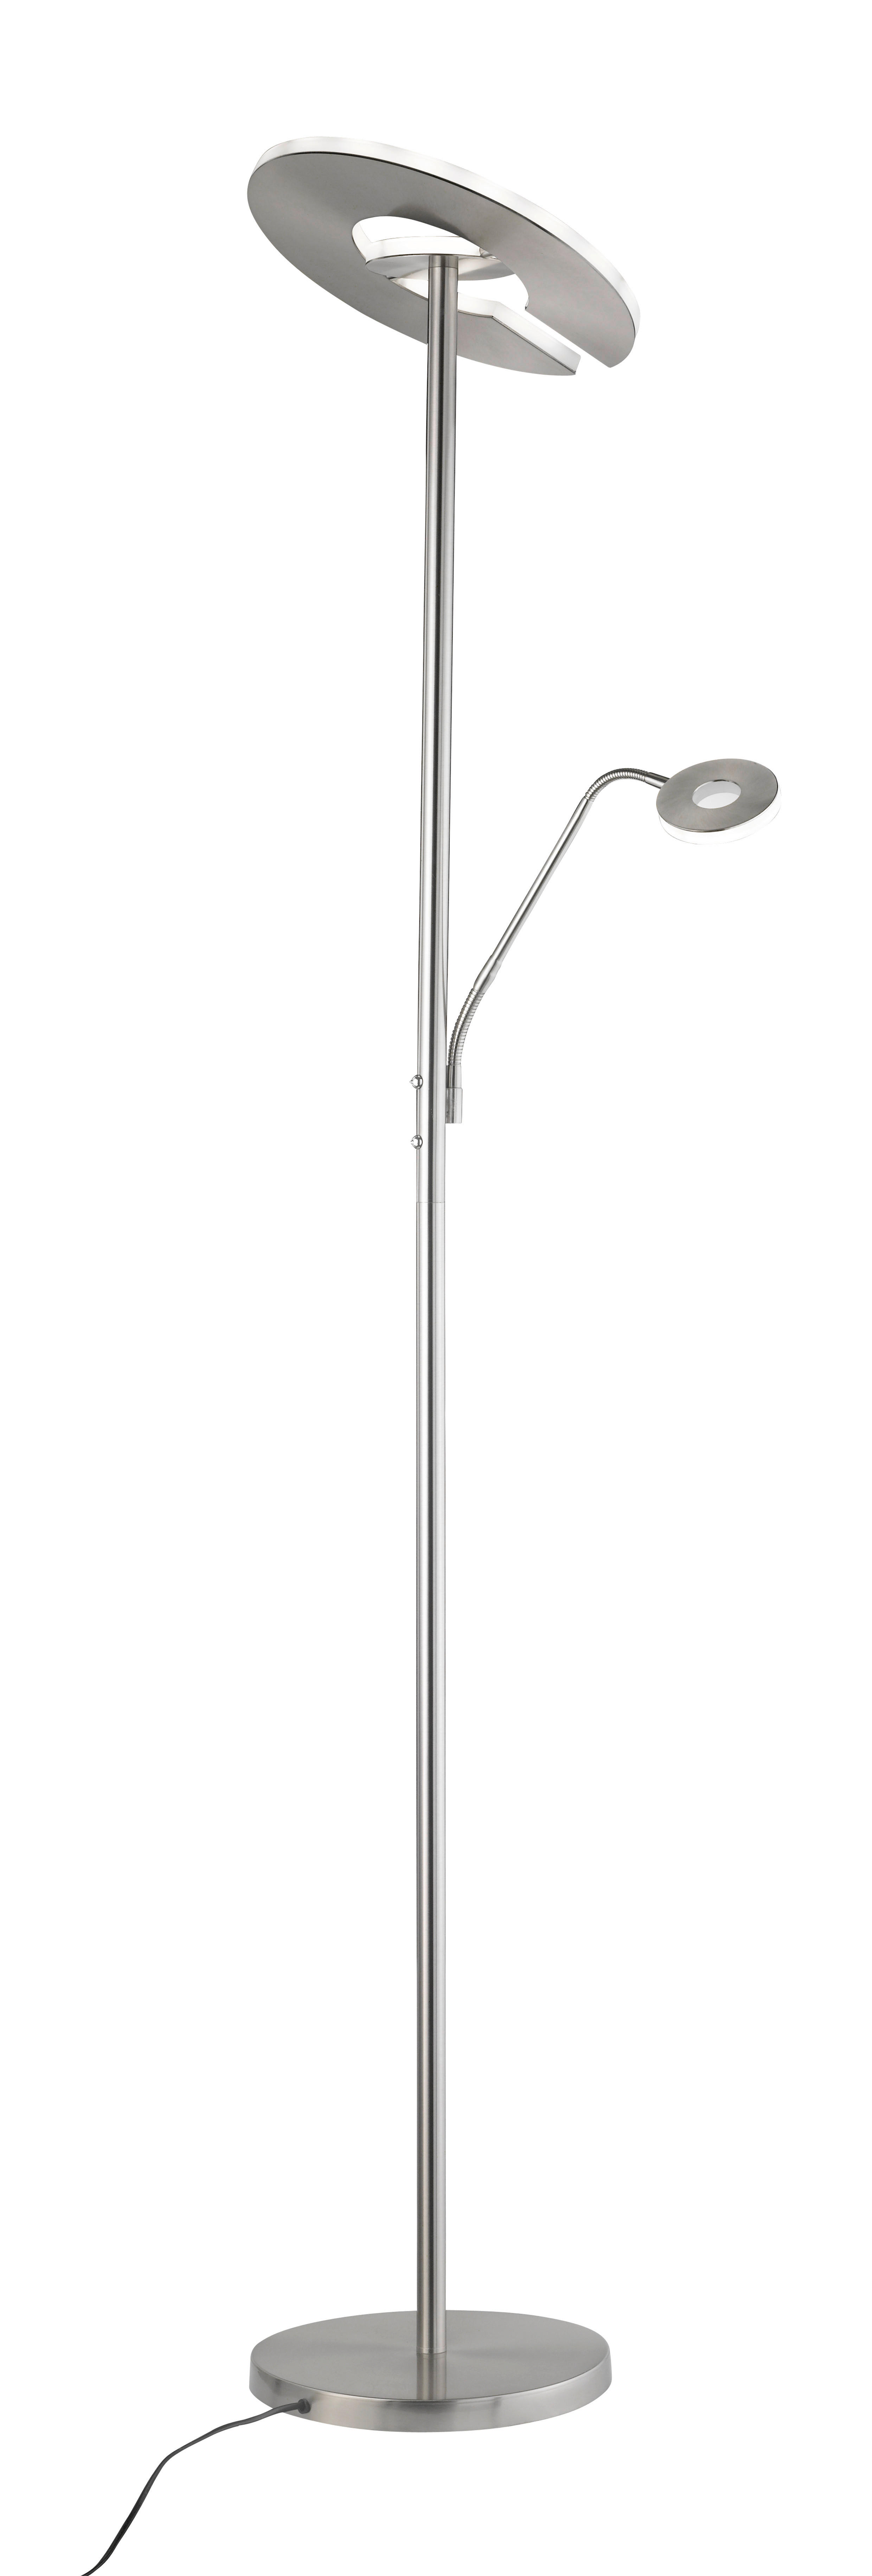 LED-STEHLEUCHTE 35/180 cm    - Weiß/Nickelfarben, Design, Metall (35/180cm) - Fischer & Honsel